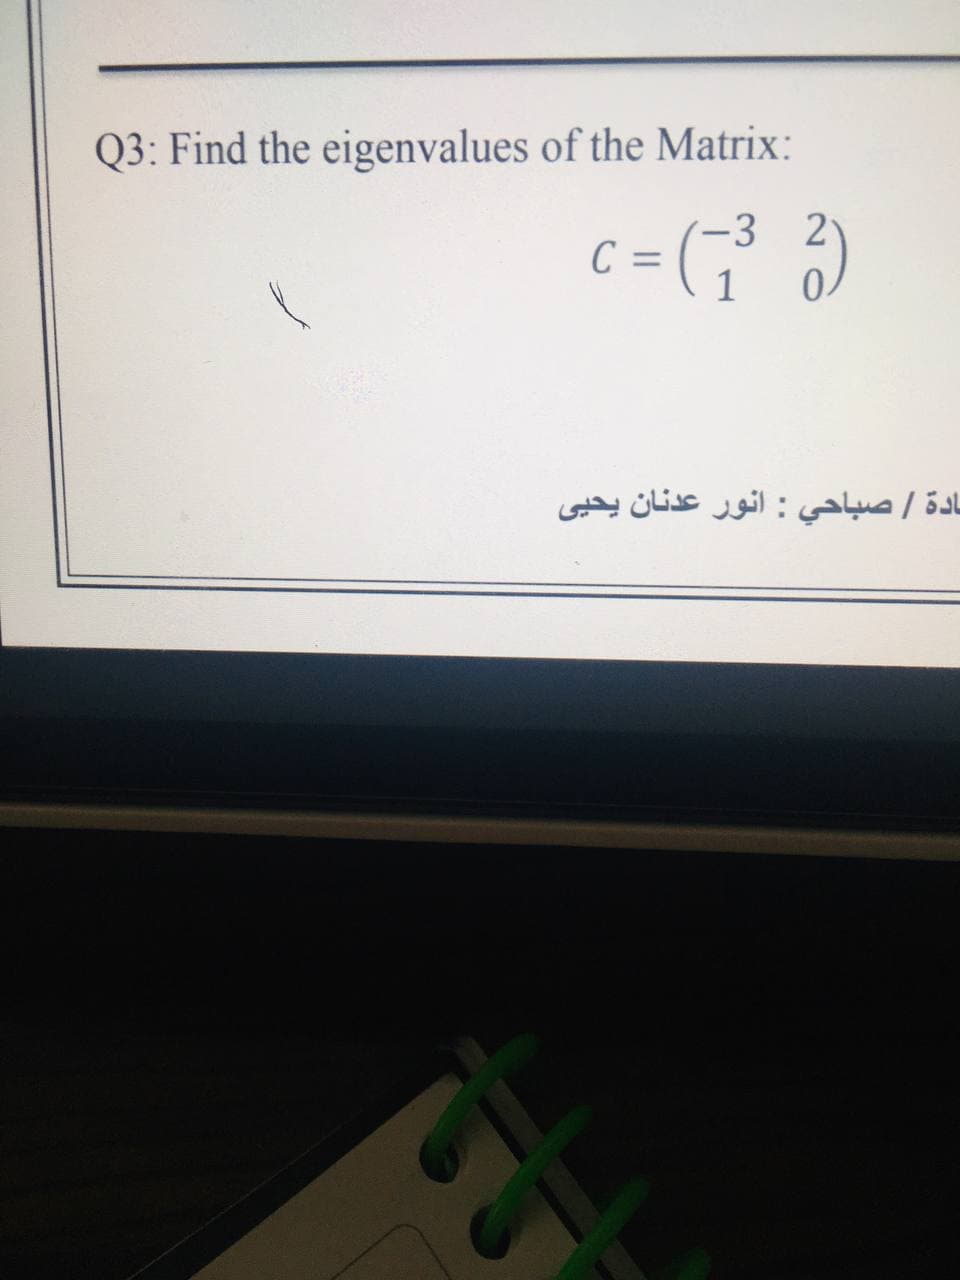 Q3: Find the eigenvalues of the Matrix:
C =
3
21
1
ادة / صباحي : انور عدنان یحیی
